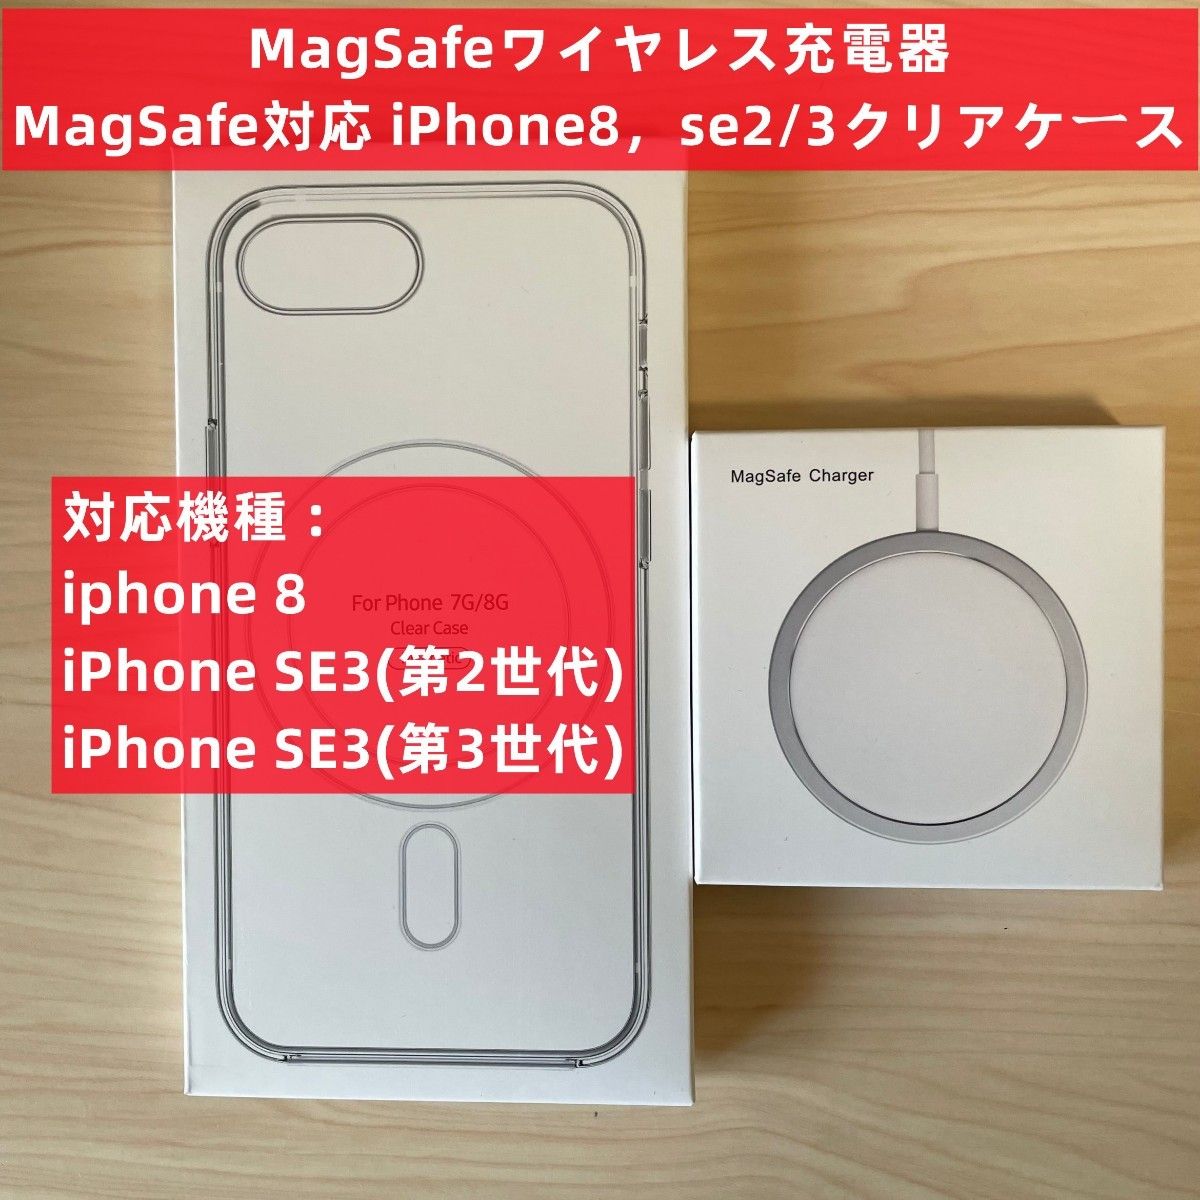 お中元 Magsafe充電器+電源アダプタ+iphone11promax クリアケースr